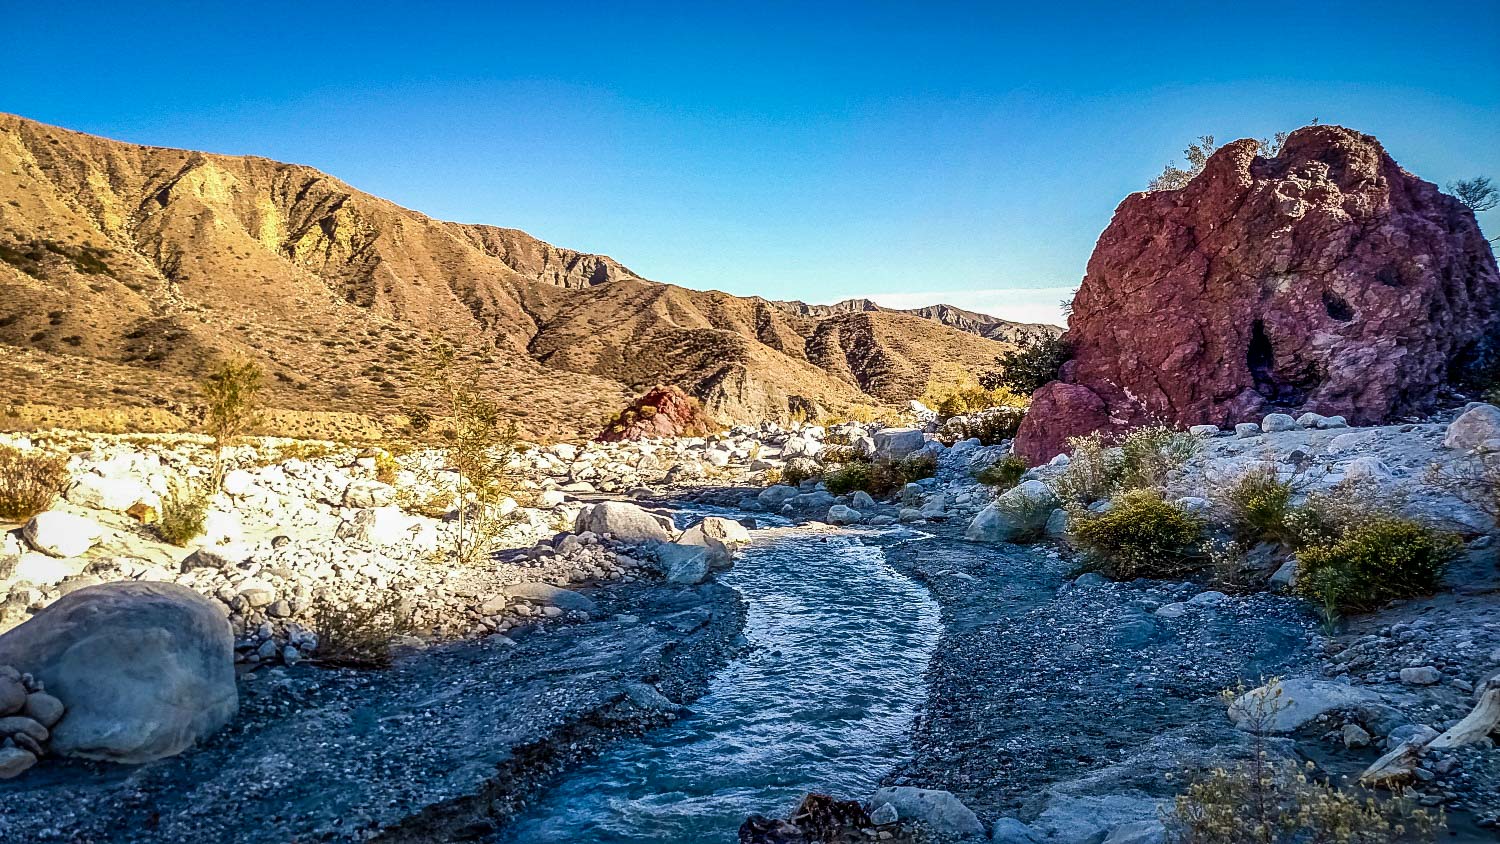 加州最佳沙漠徒步旅行:白水峡谷环线来源:We Who Roam